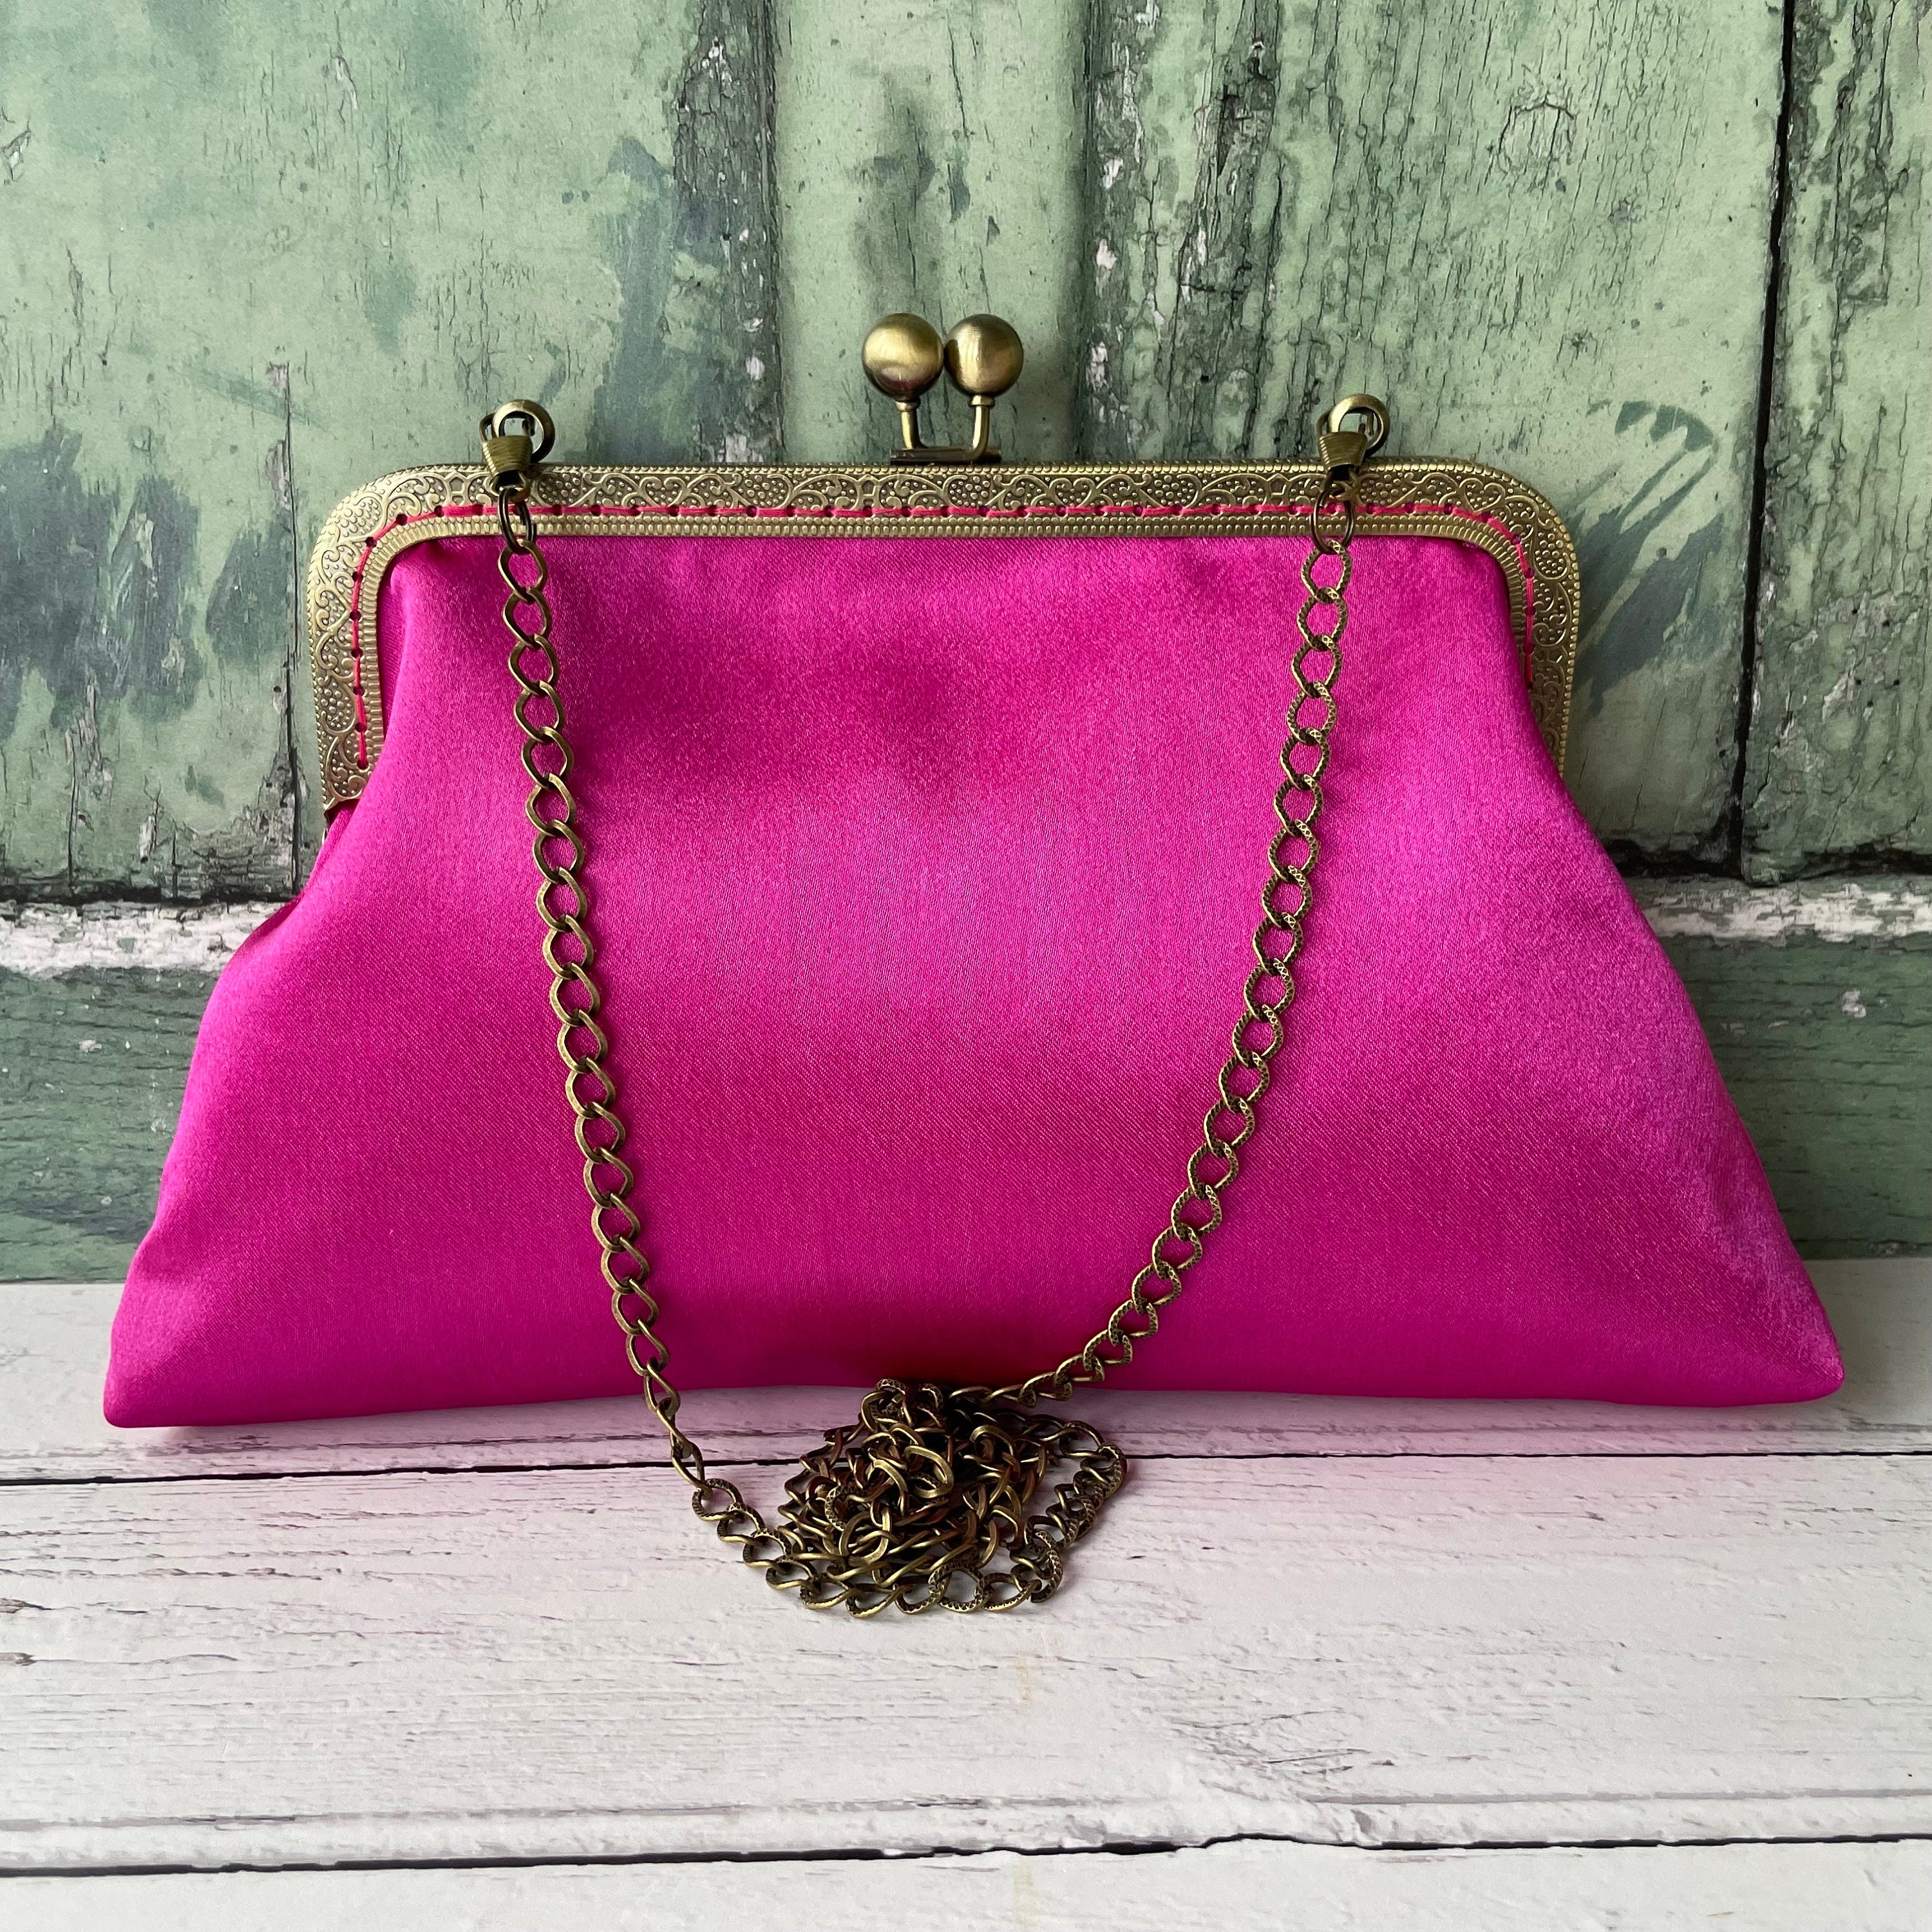 Buy HauteSauce Pink Medium Leather Jaguar Handbag at Best Price @ Tata CLiQ